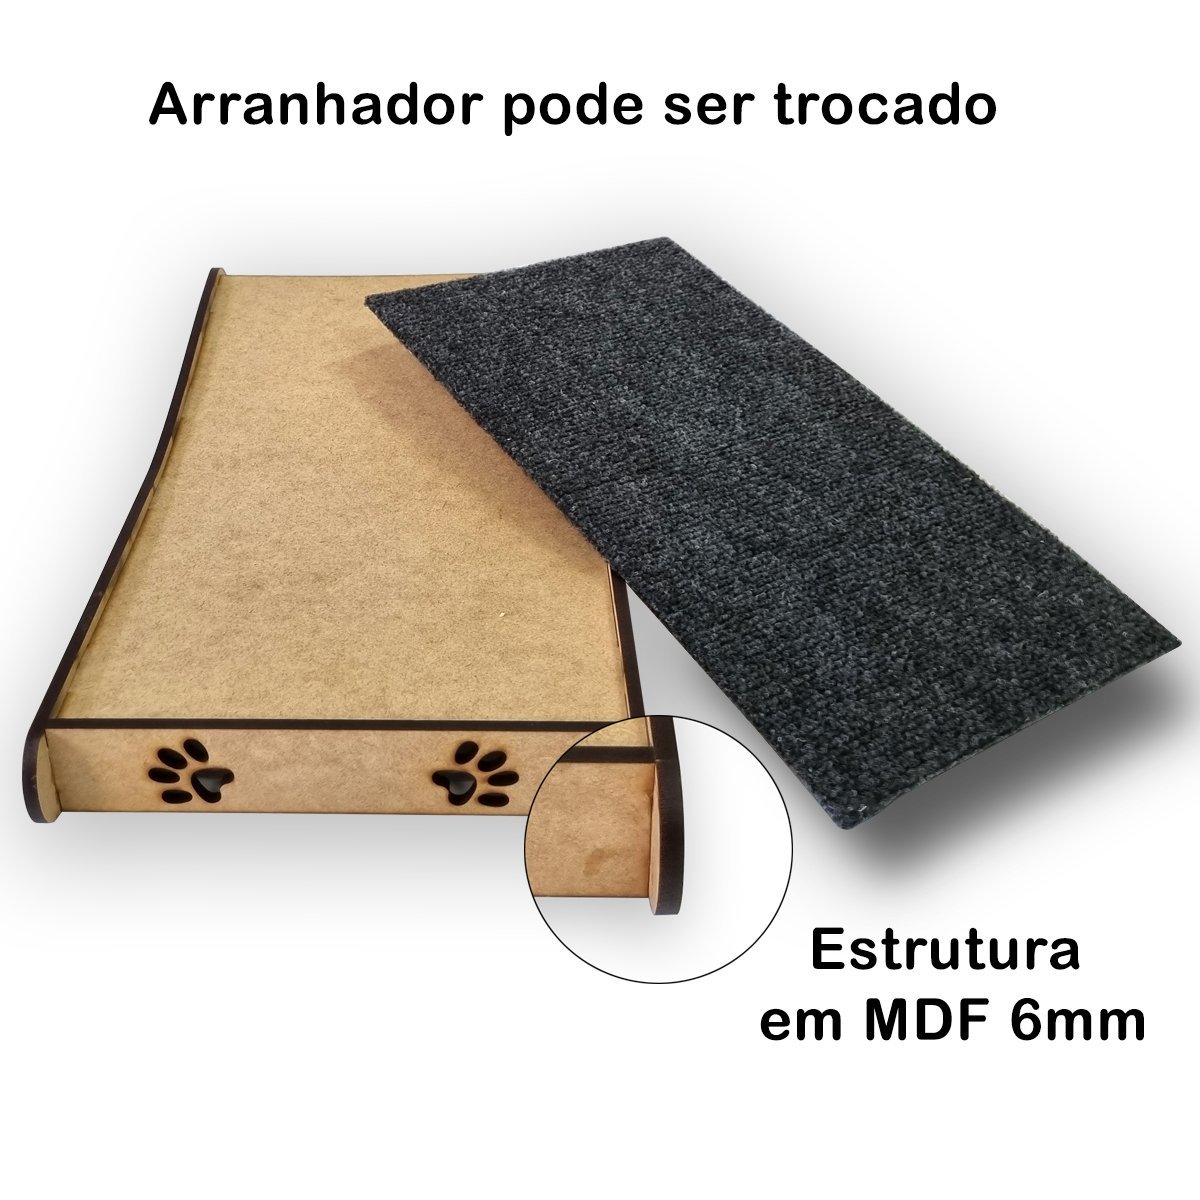 Arranhador Sofisticado de Carpete em MDF 6mm para Gatos com Refil - Artpical - 5